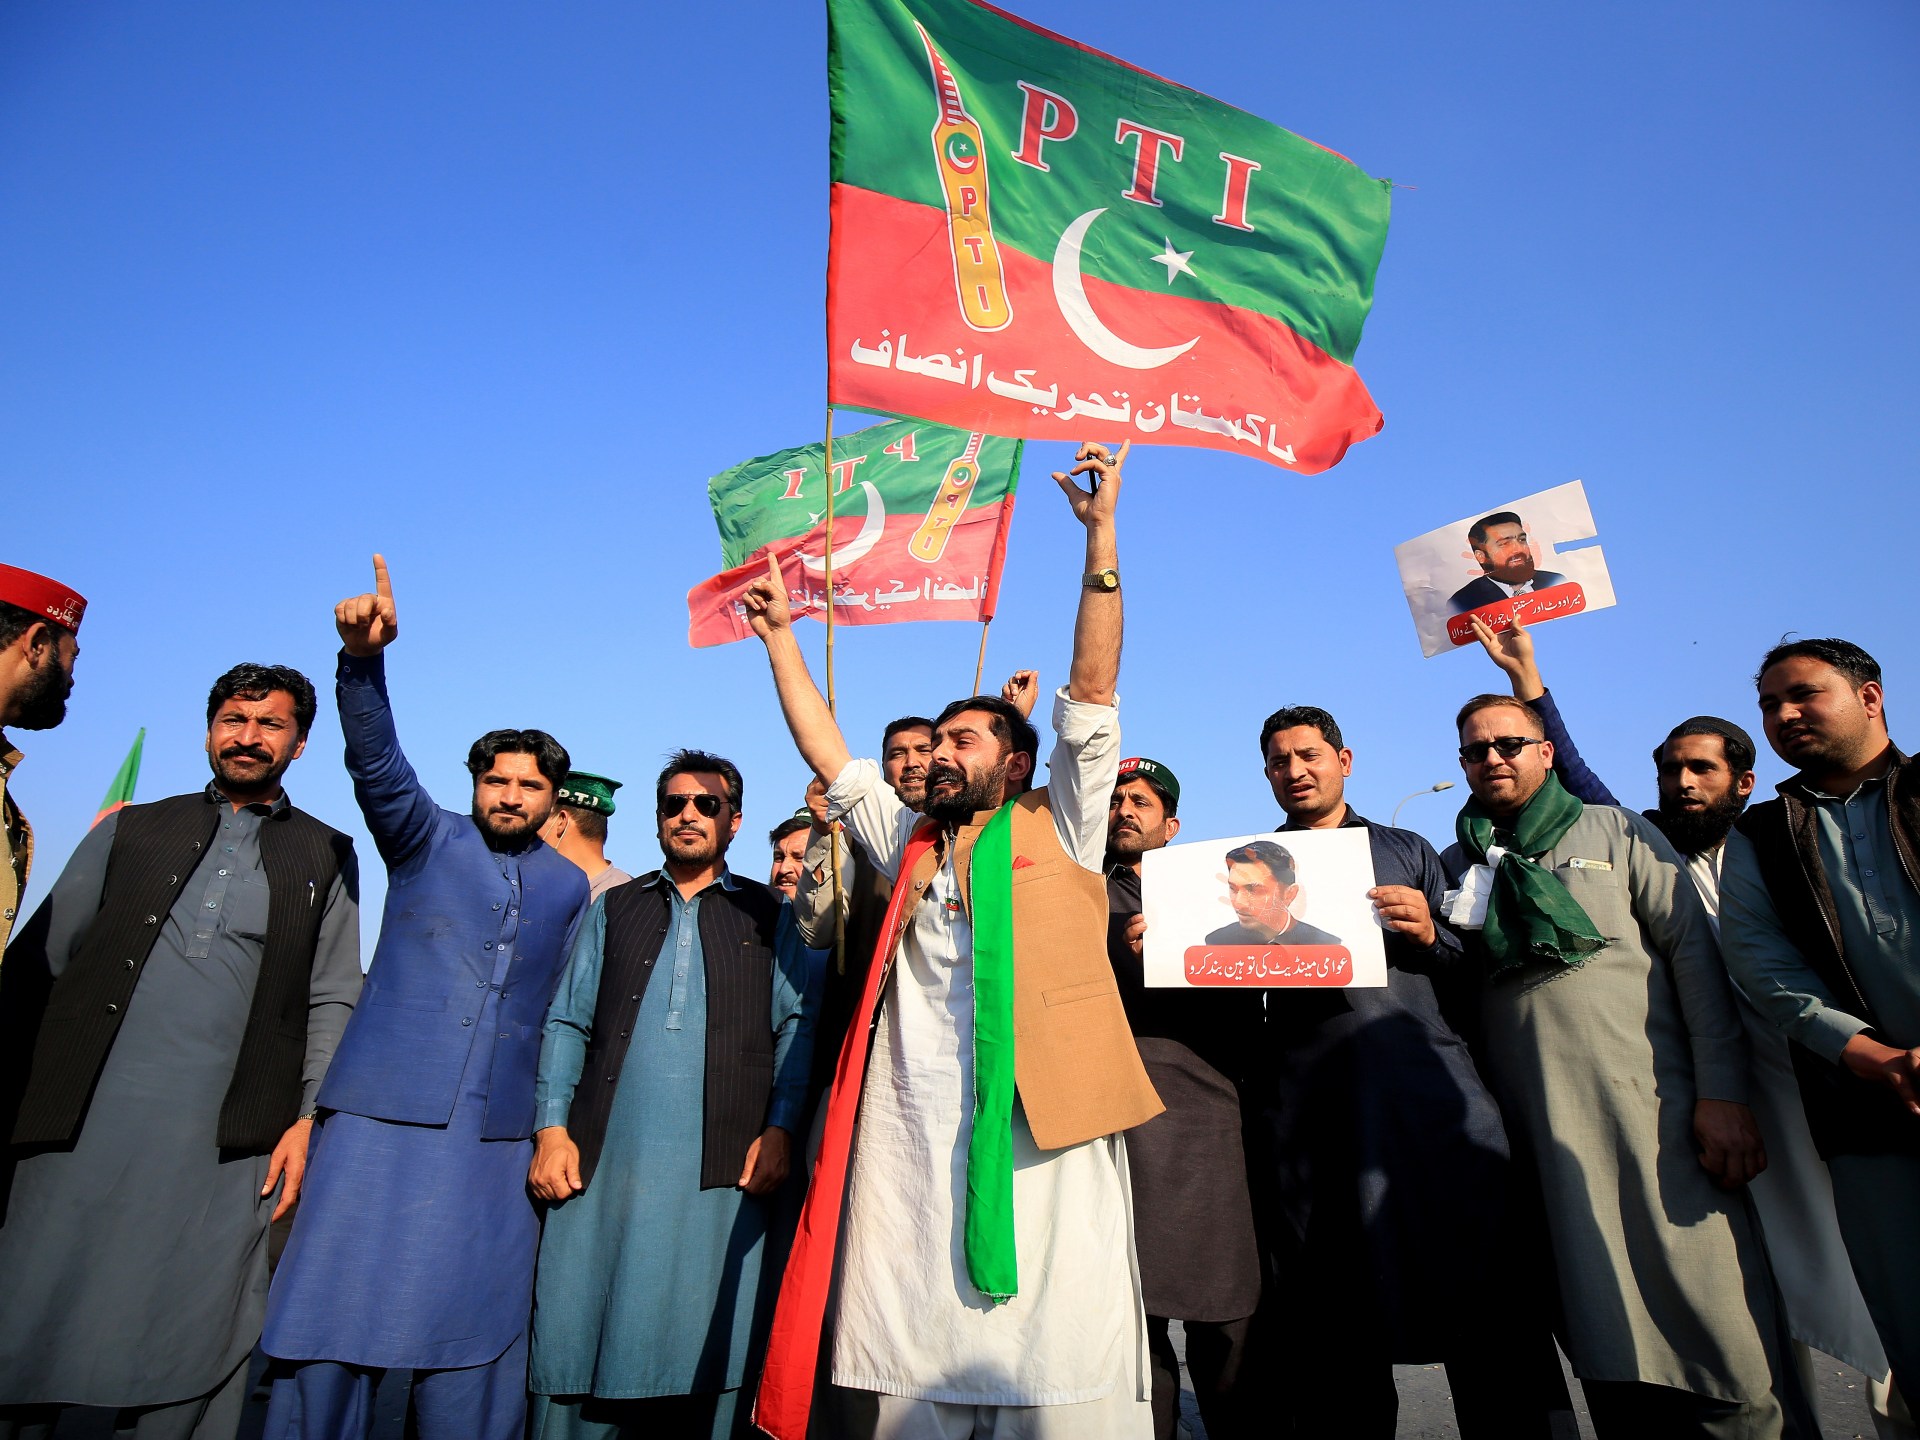 أتباع عمران خان يعتزمون تشكيل حكومة ائتلافية في باكستان | أخبار – البوكس نيوز